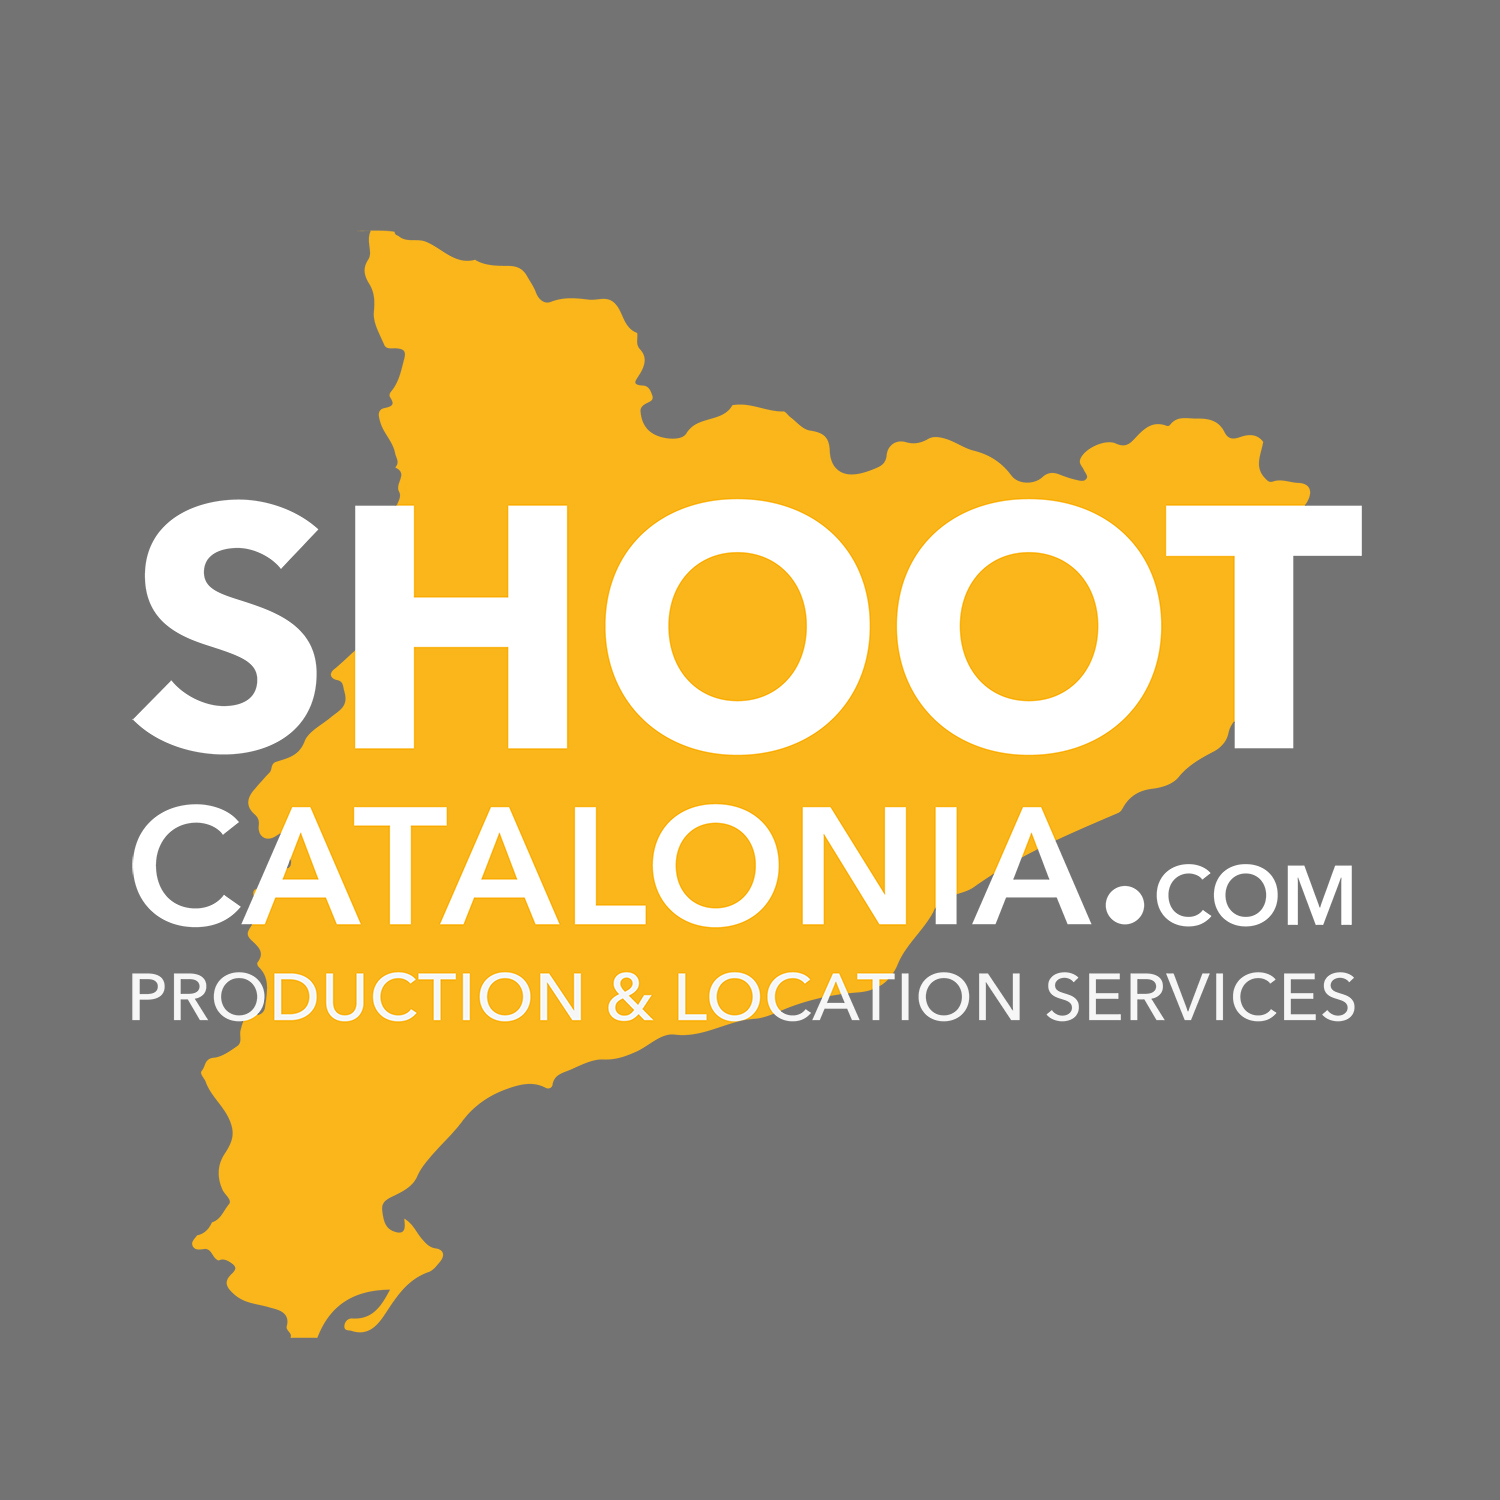 SHOOT CATALONIA